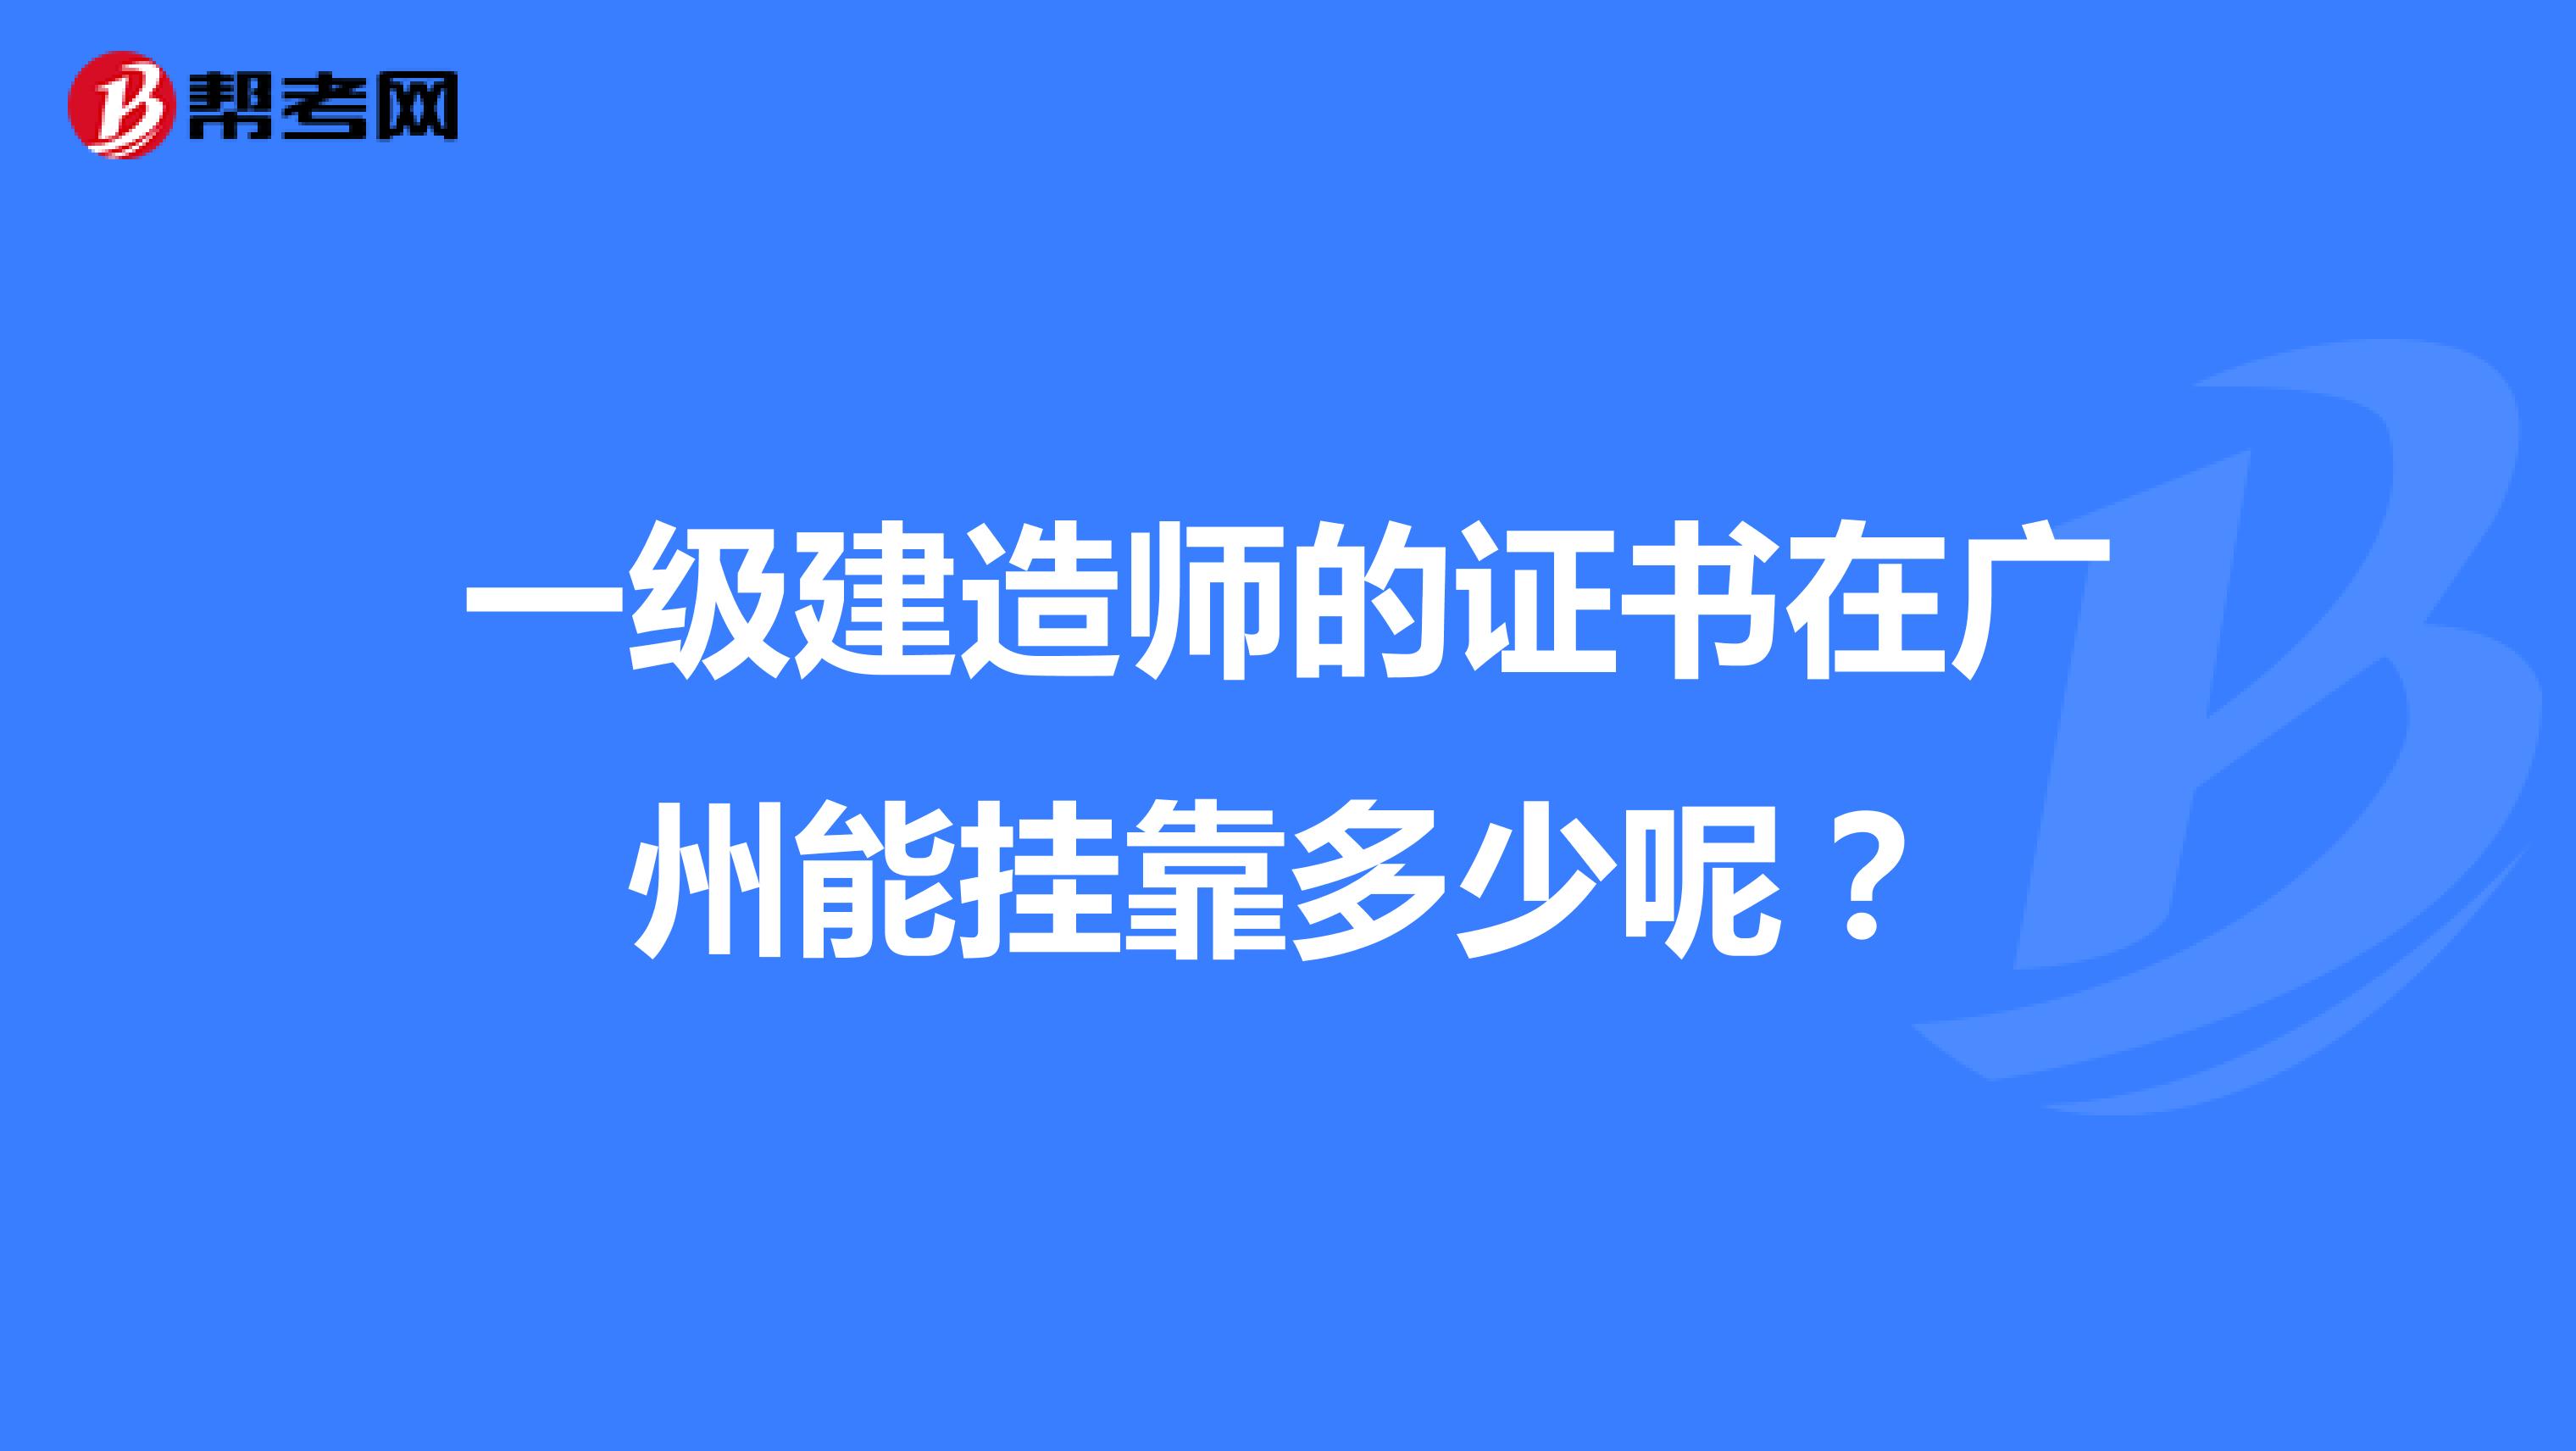 一级建造师的证书在广州能兼职多少呢？